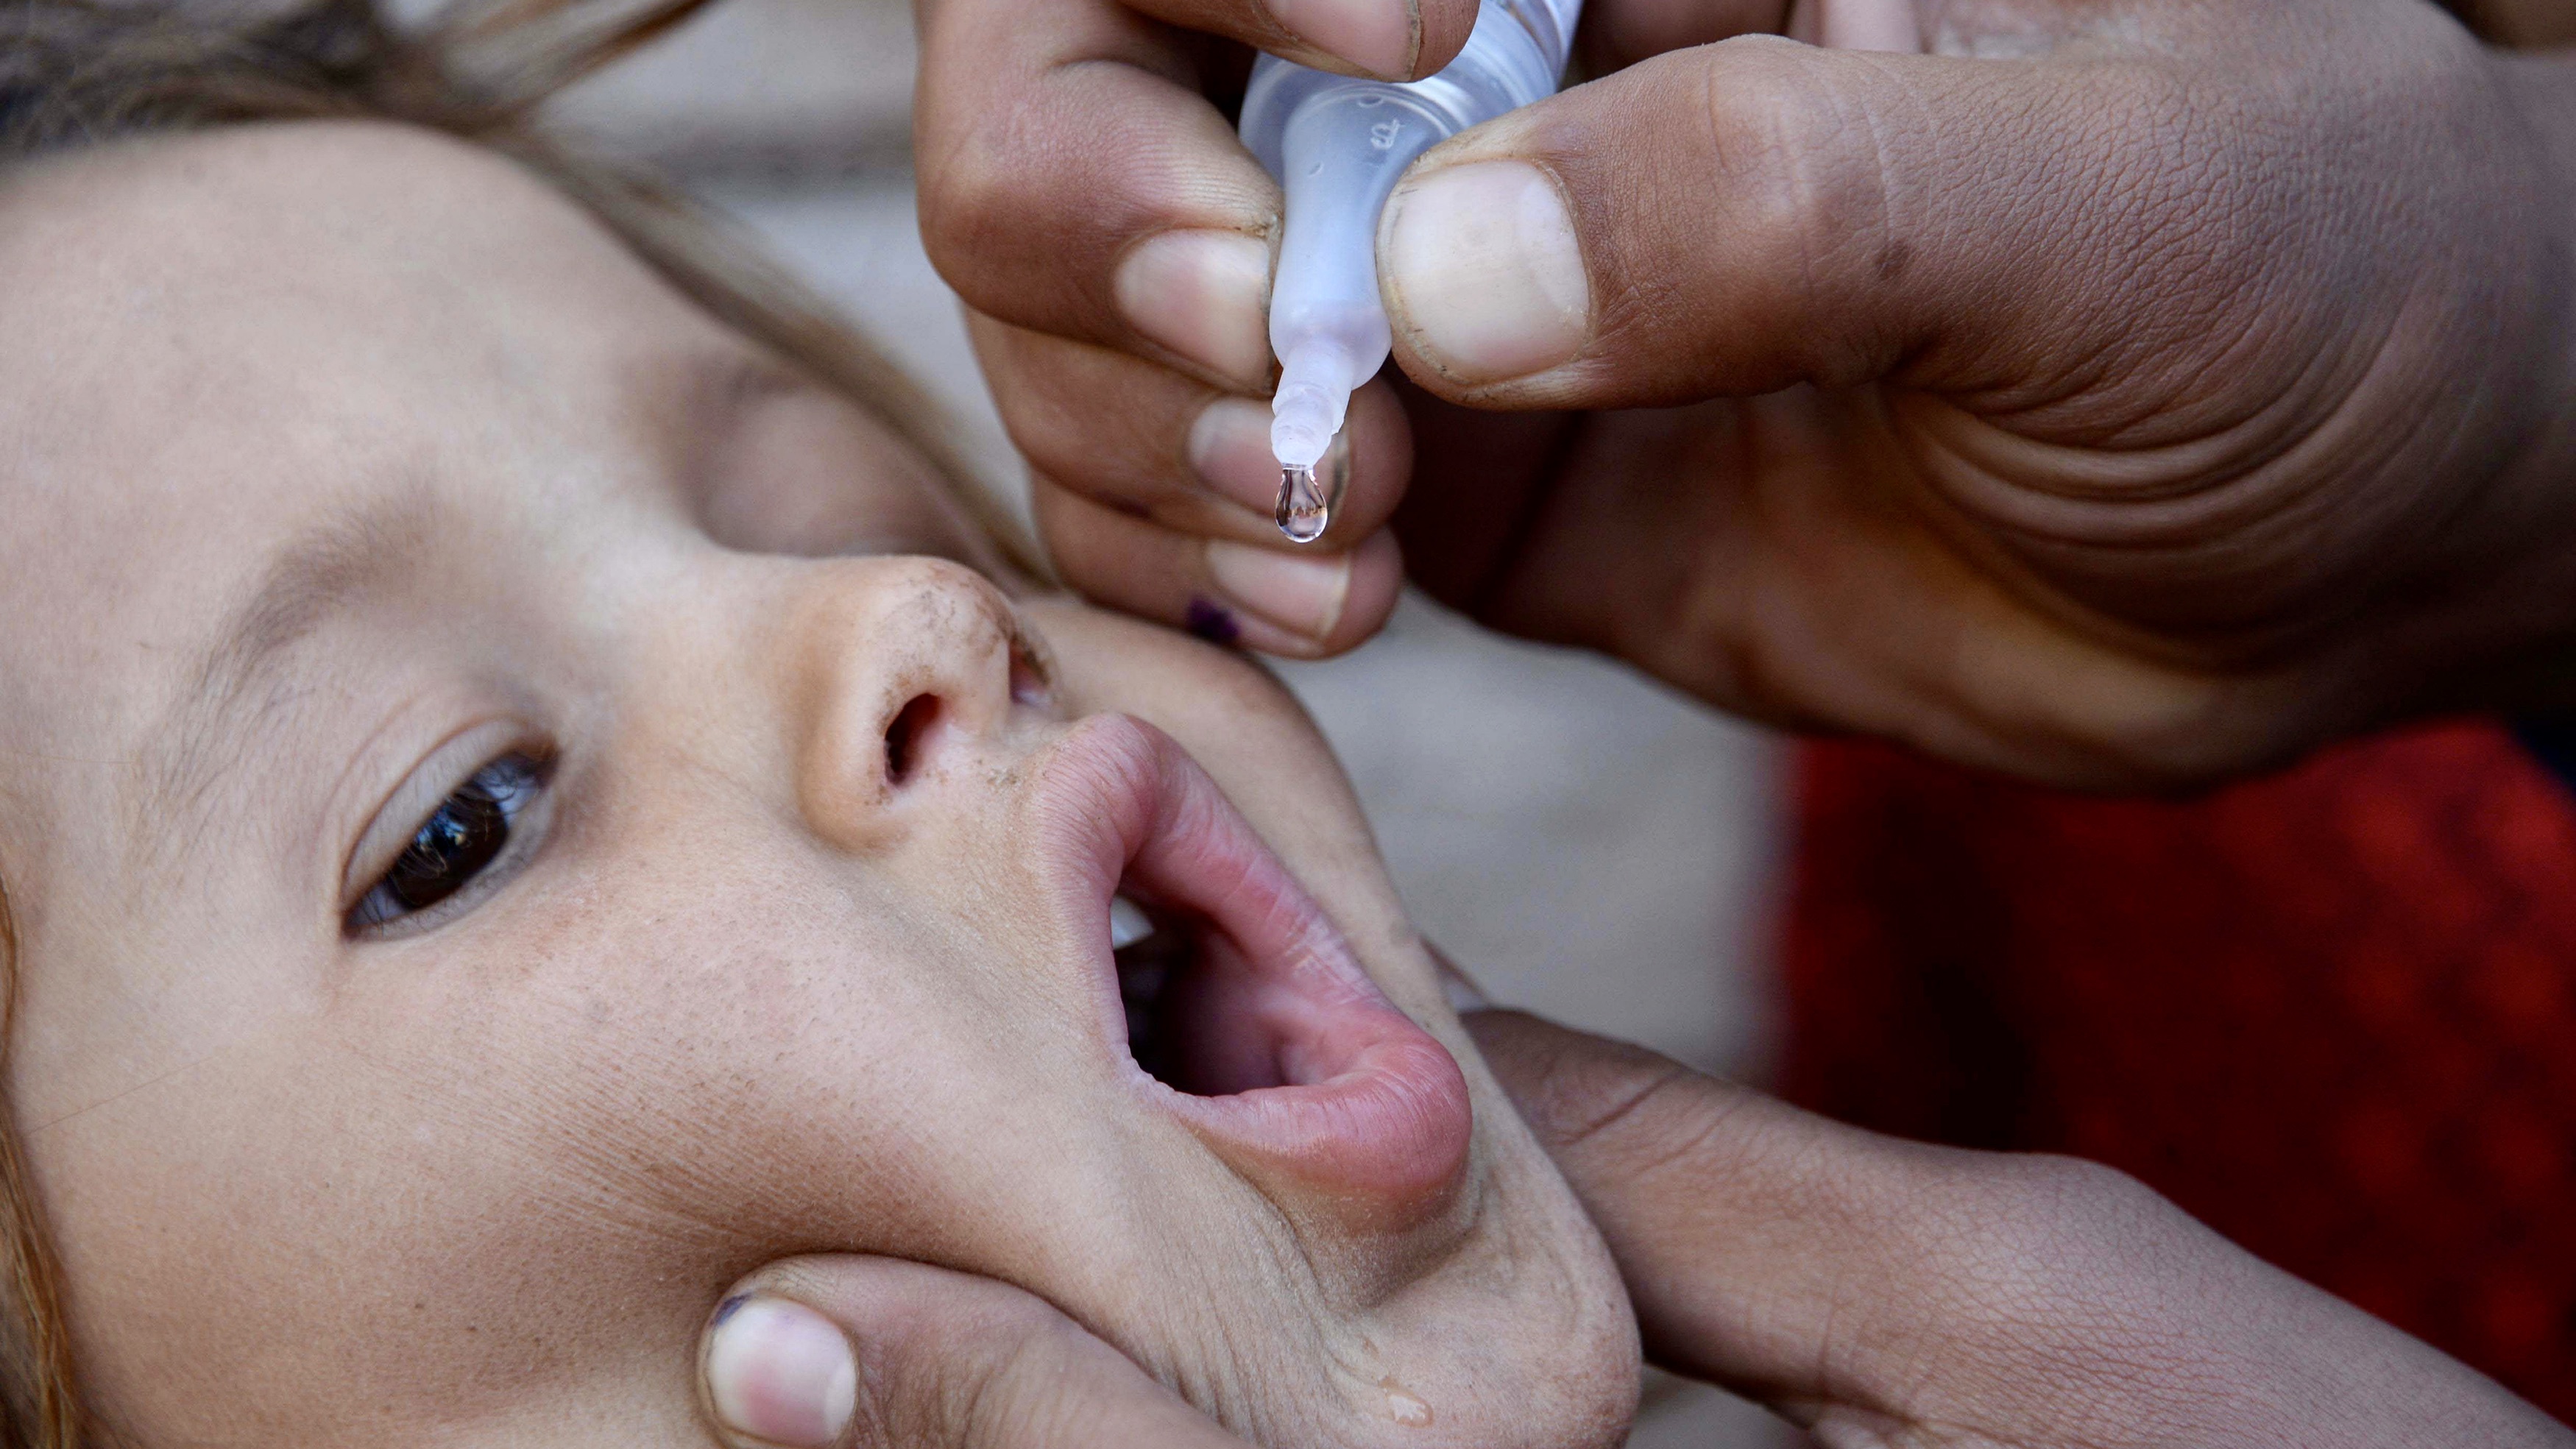 Afganisztán csaknem legyőzte a járványos gyermekbénulást, de lehet, hogy kárba vész az összes erőfeszítés